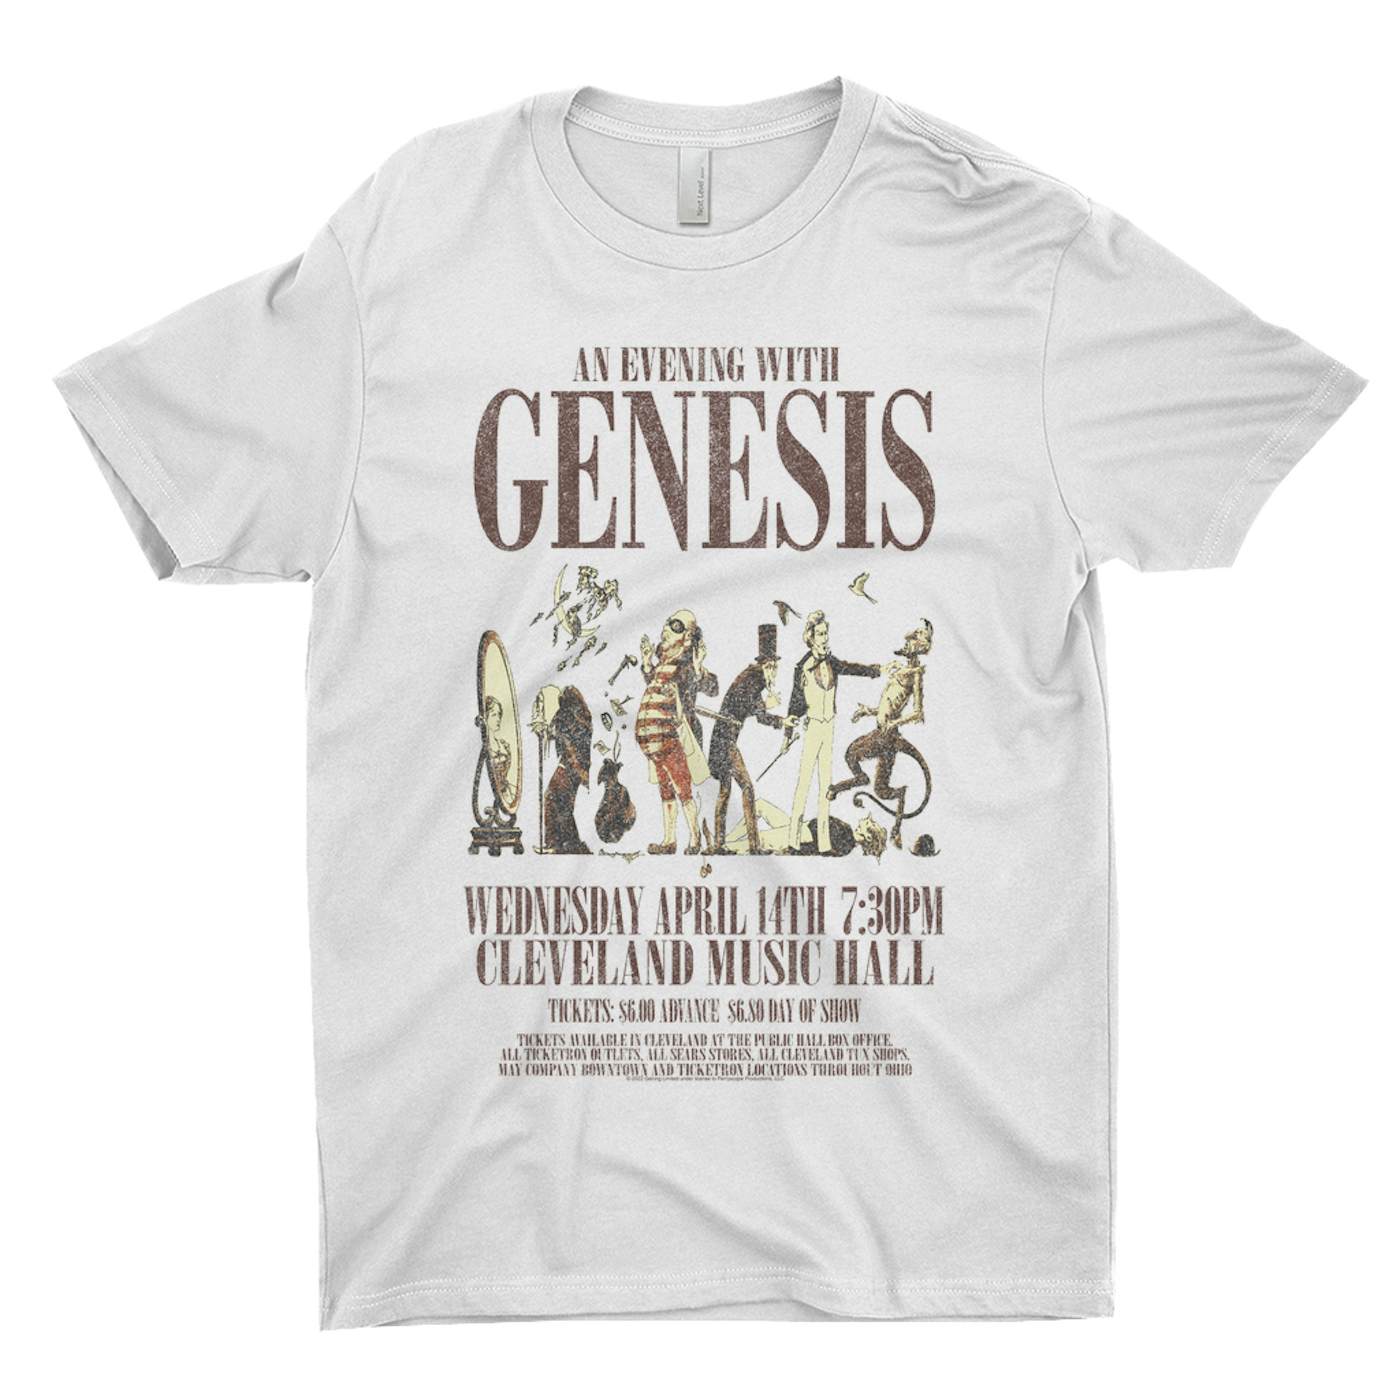 Genesis T-Shirt | Cleveland Music Hall Concert Genesis Shirt